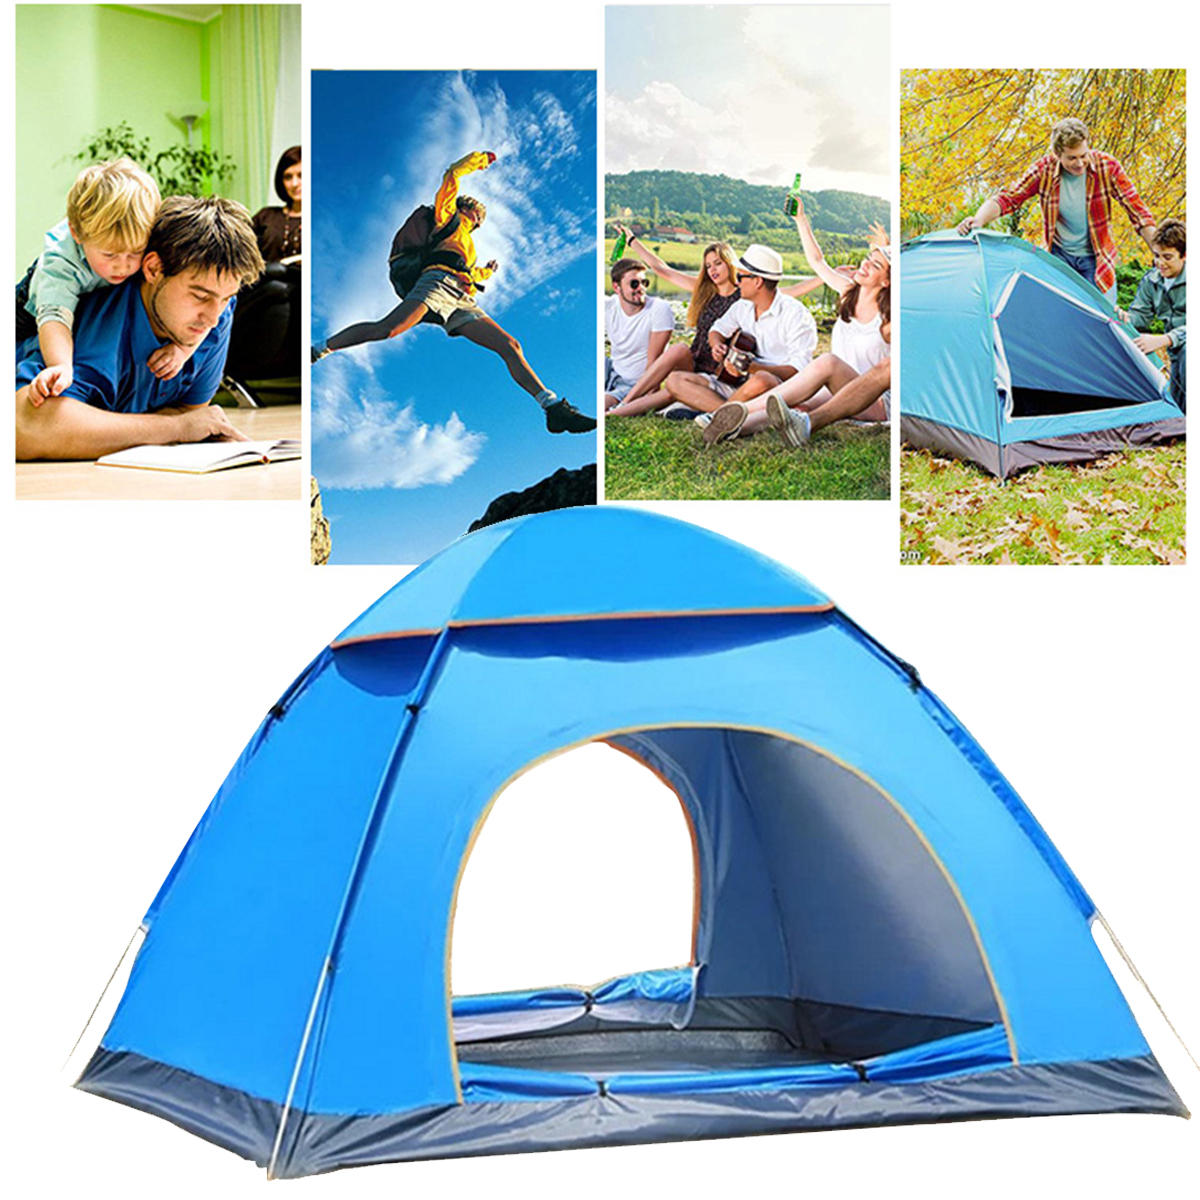 Tente de camping Dome pour 3-4 personnes avec double porte, étanche en polyester, idéale pour les voyages à la plage et la randonnée.